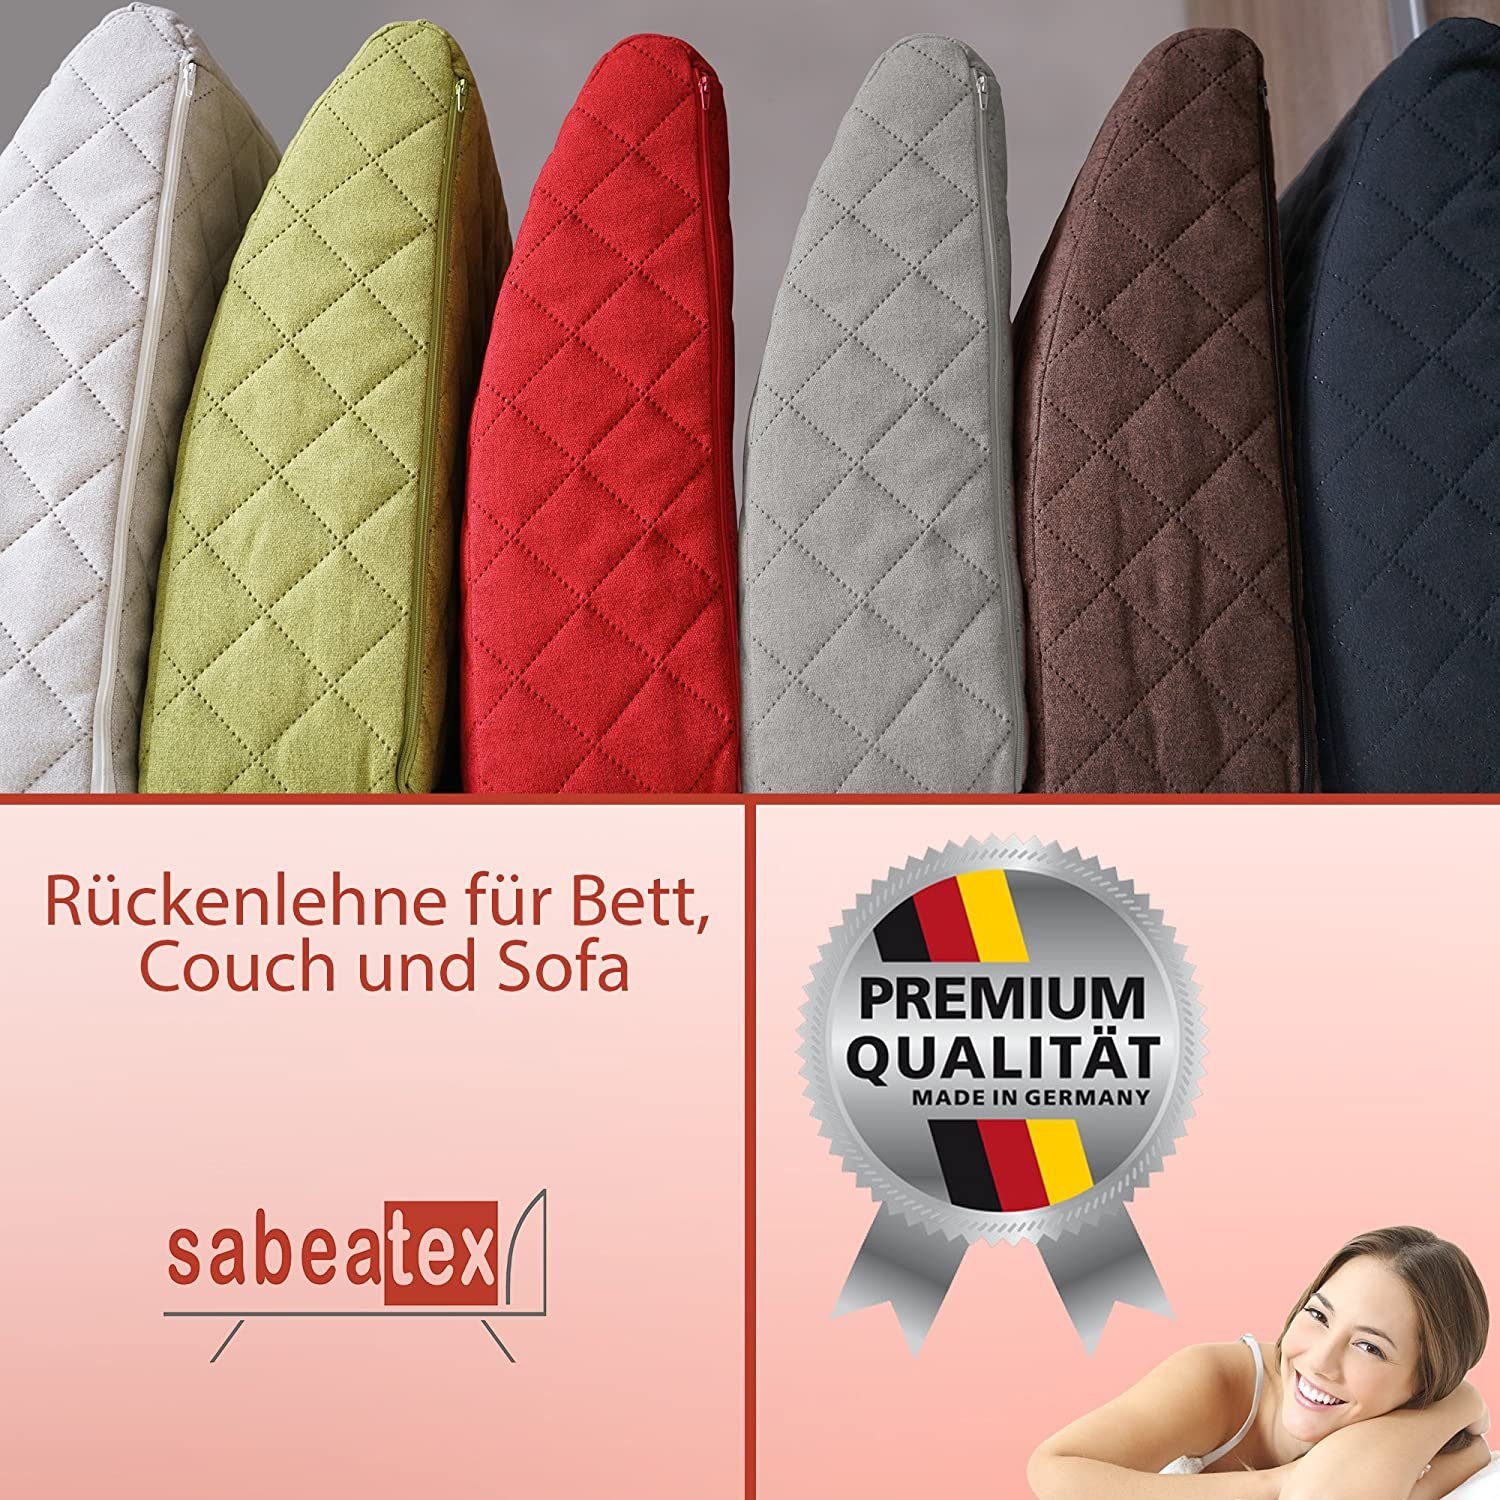 sabeatex Rückenkissen geprägter Palettenmöbel, für Stoff Rückenlehne, Sofakissen, Schaumstoffpolster, Lounge- beige oder